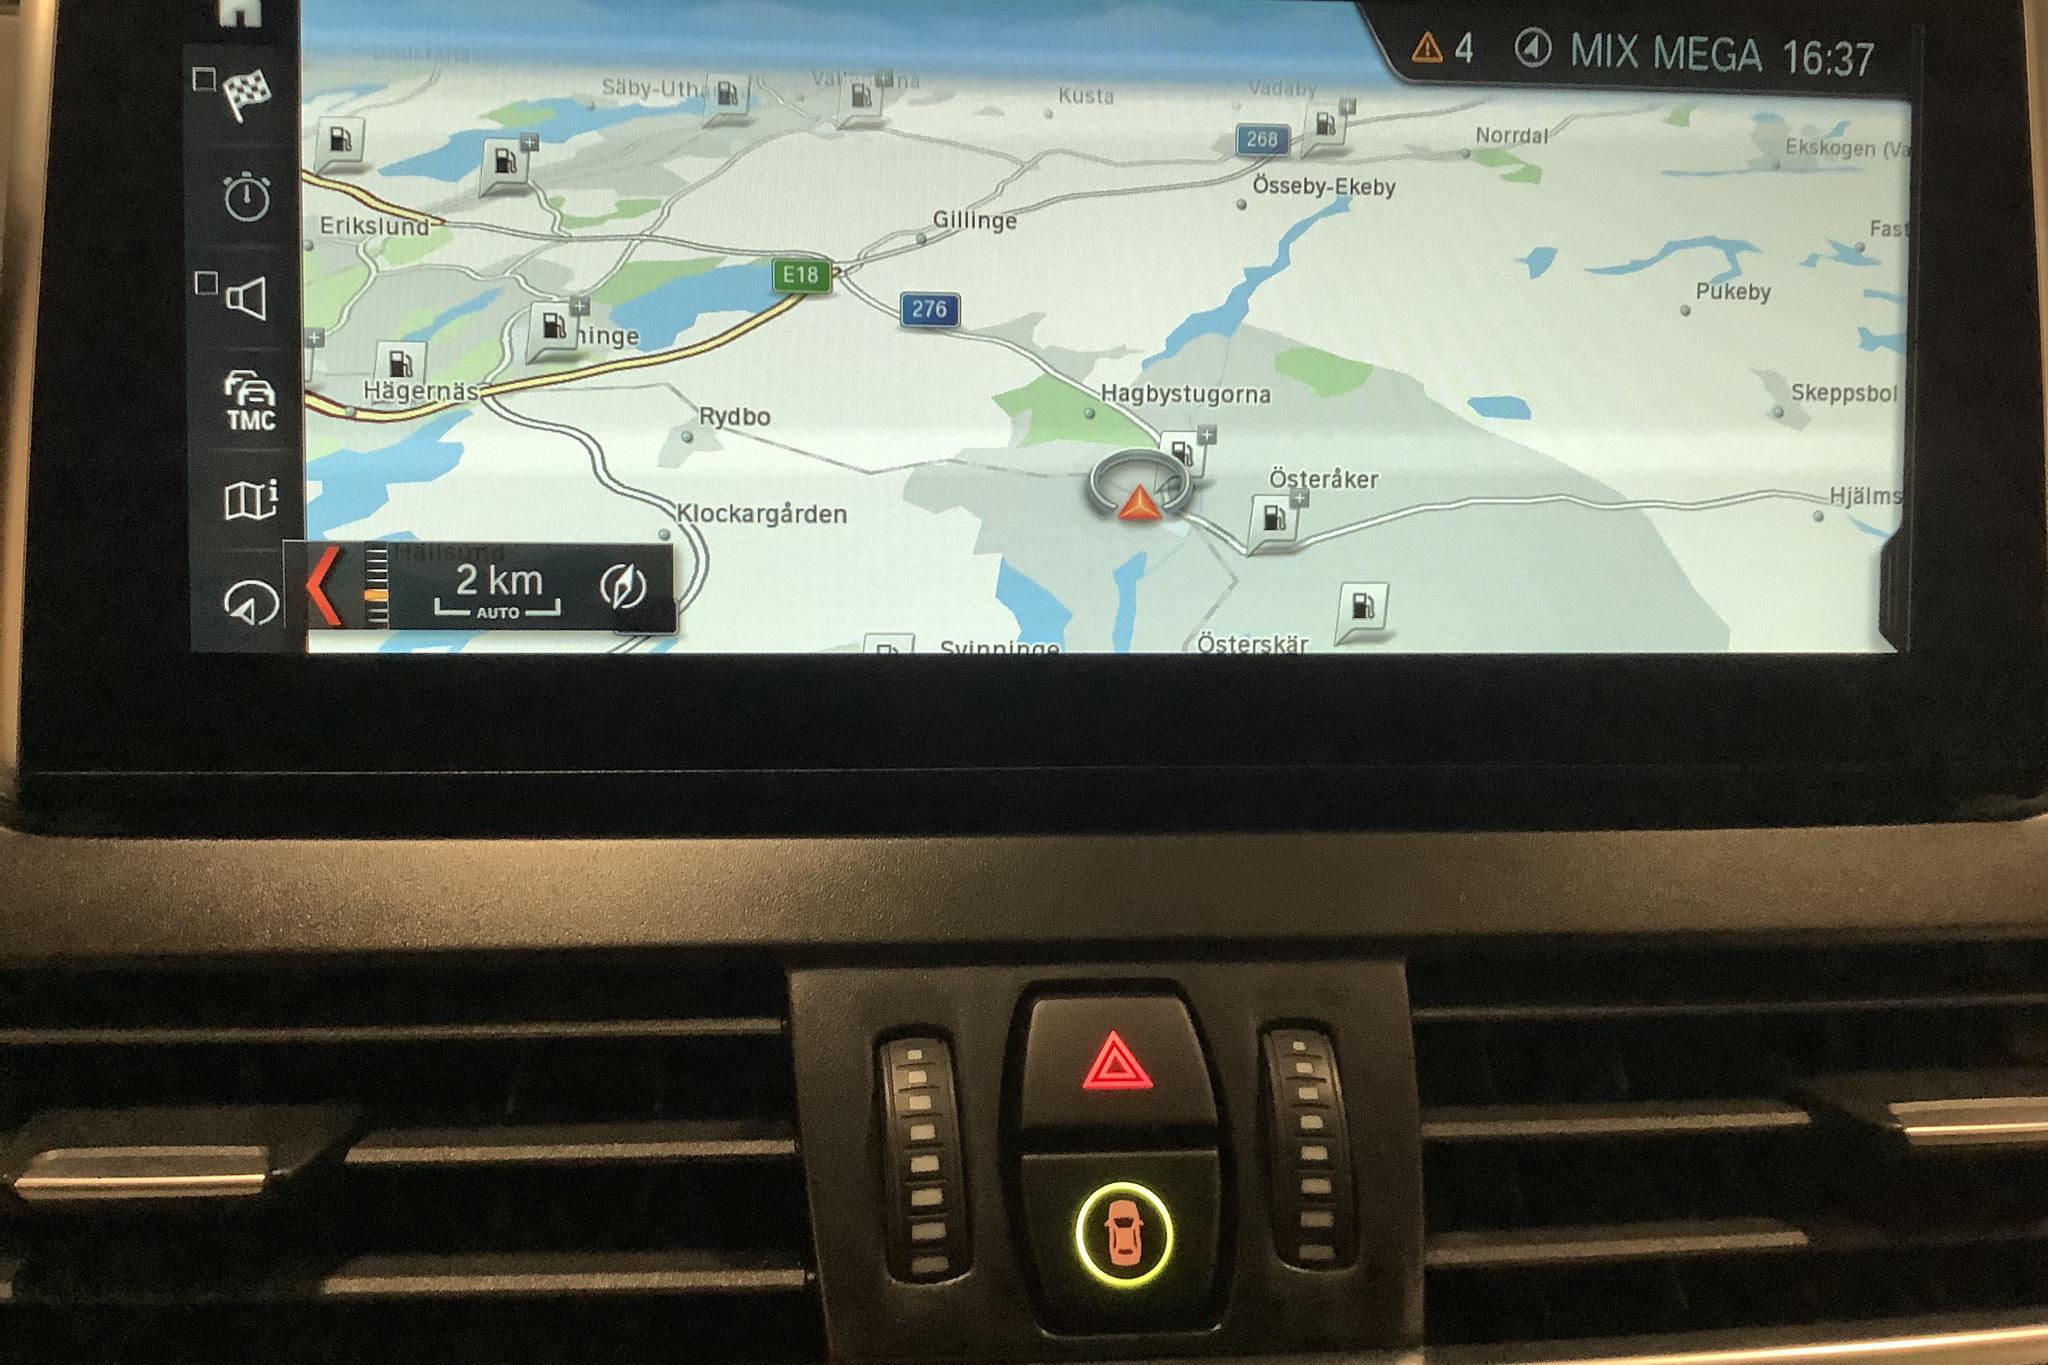 BMW 220d xDrive Active Tourer LCI, F45 (190hk) - 23 770 km - Automatic - gray - 2019